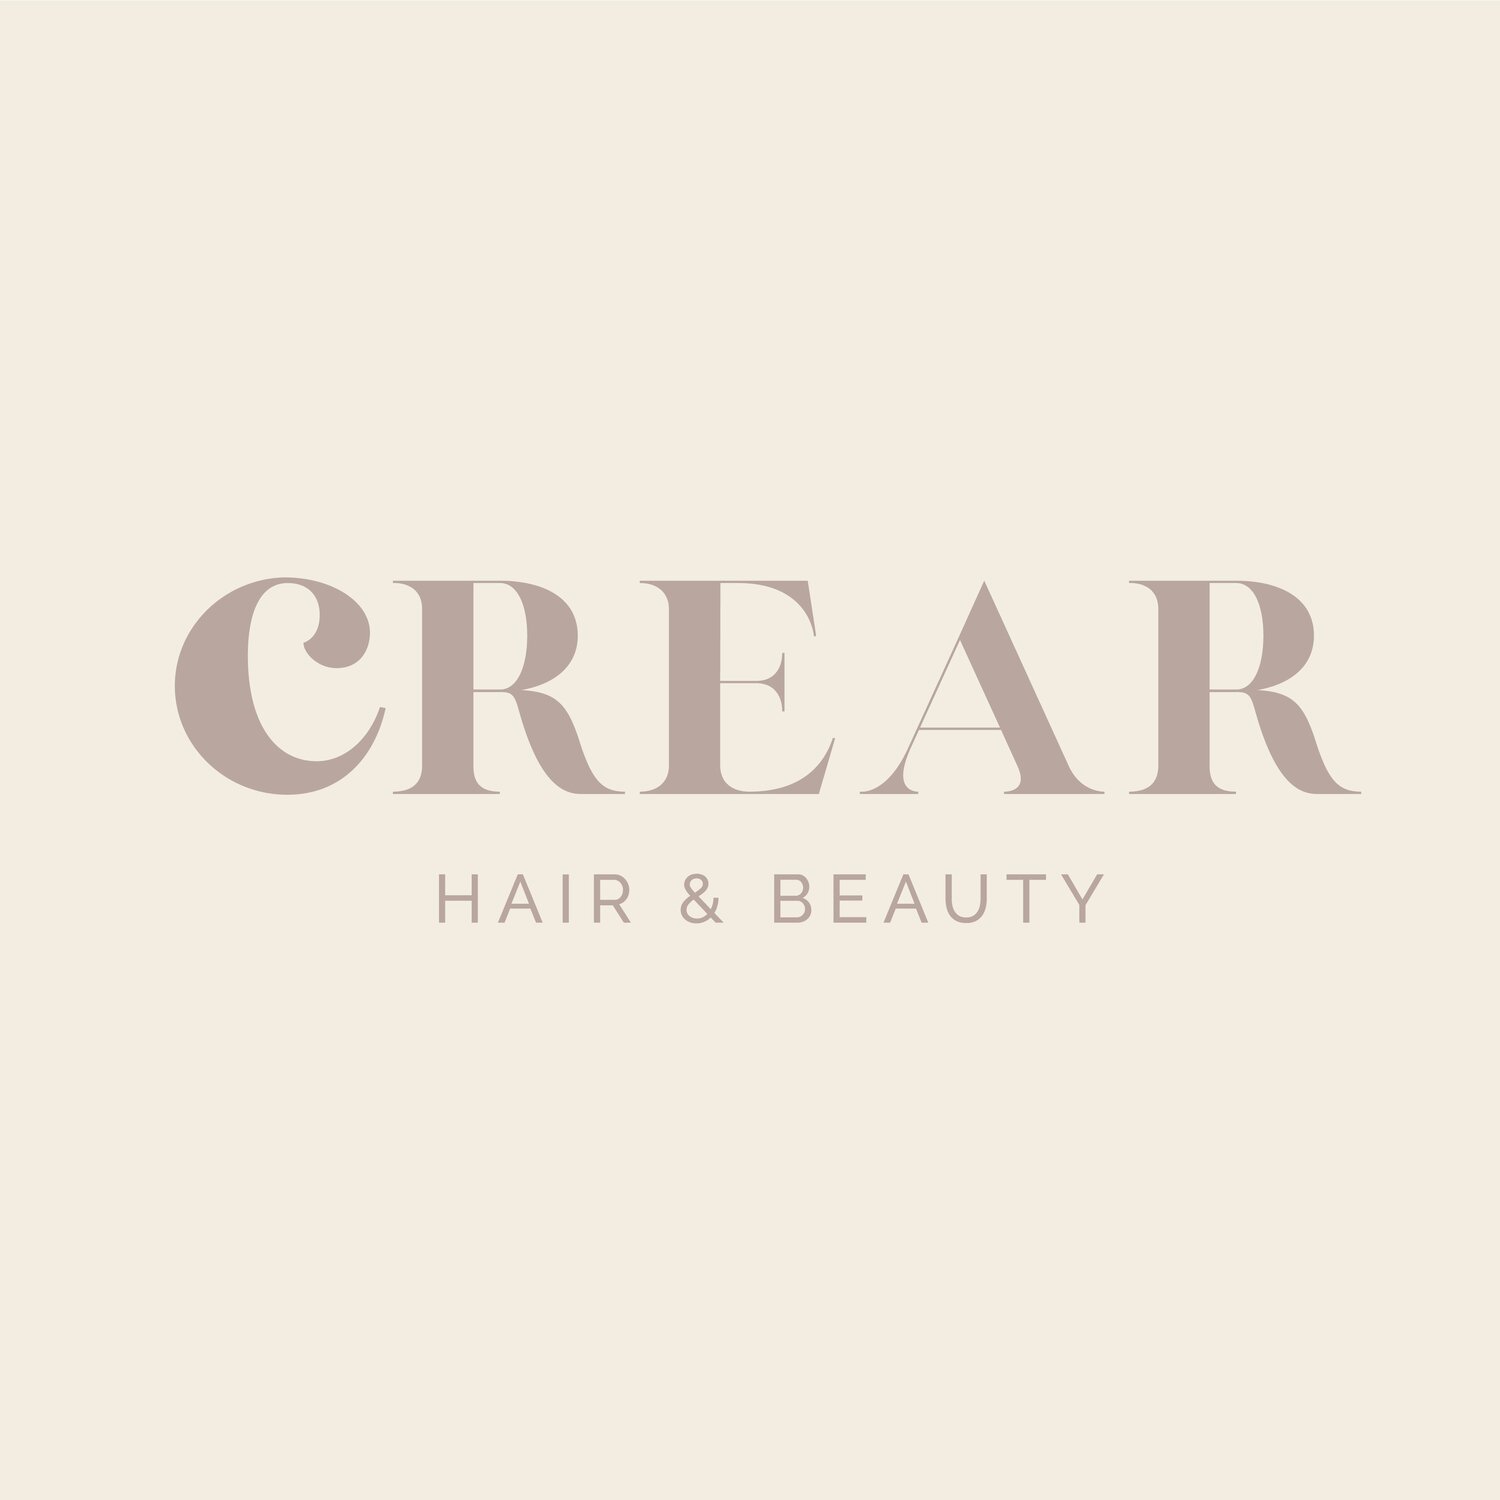 Crear Hair and Beauty